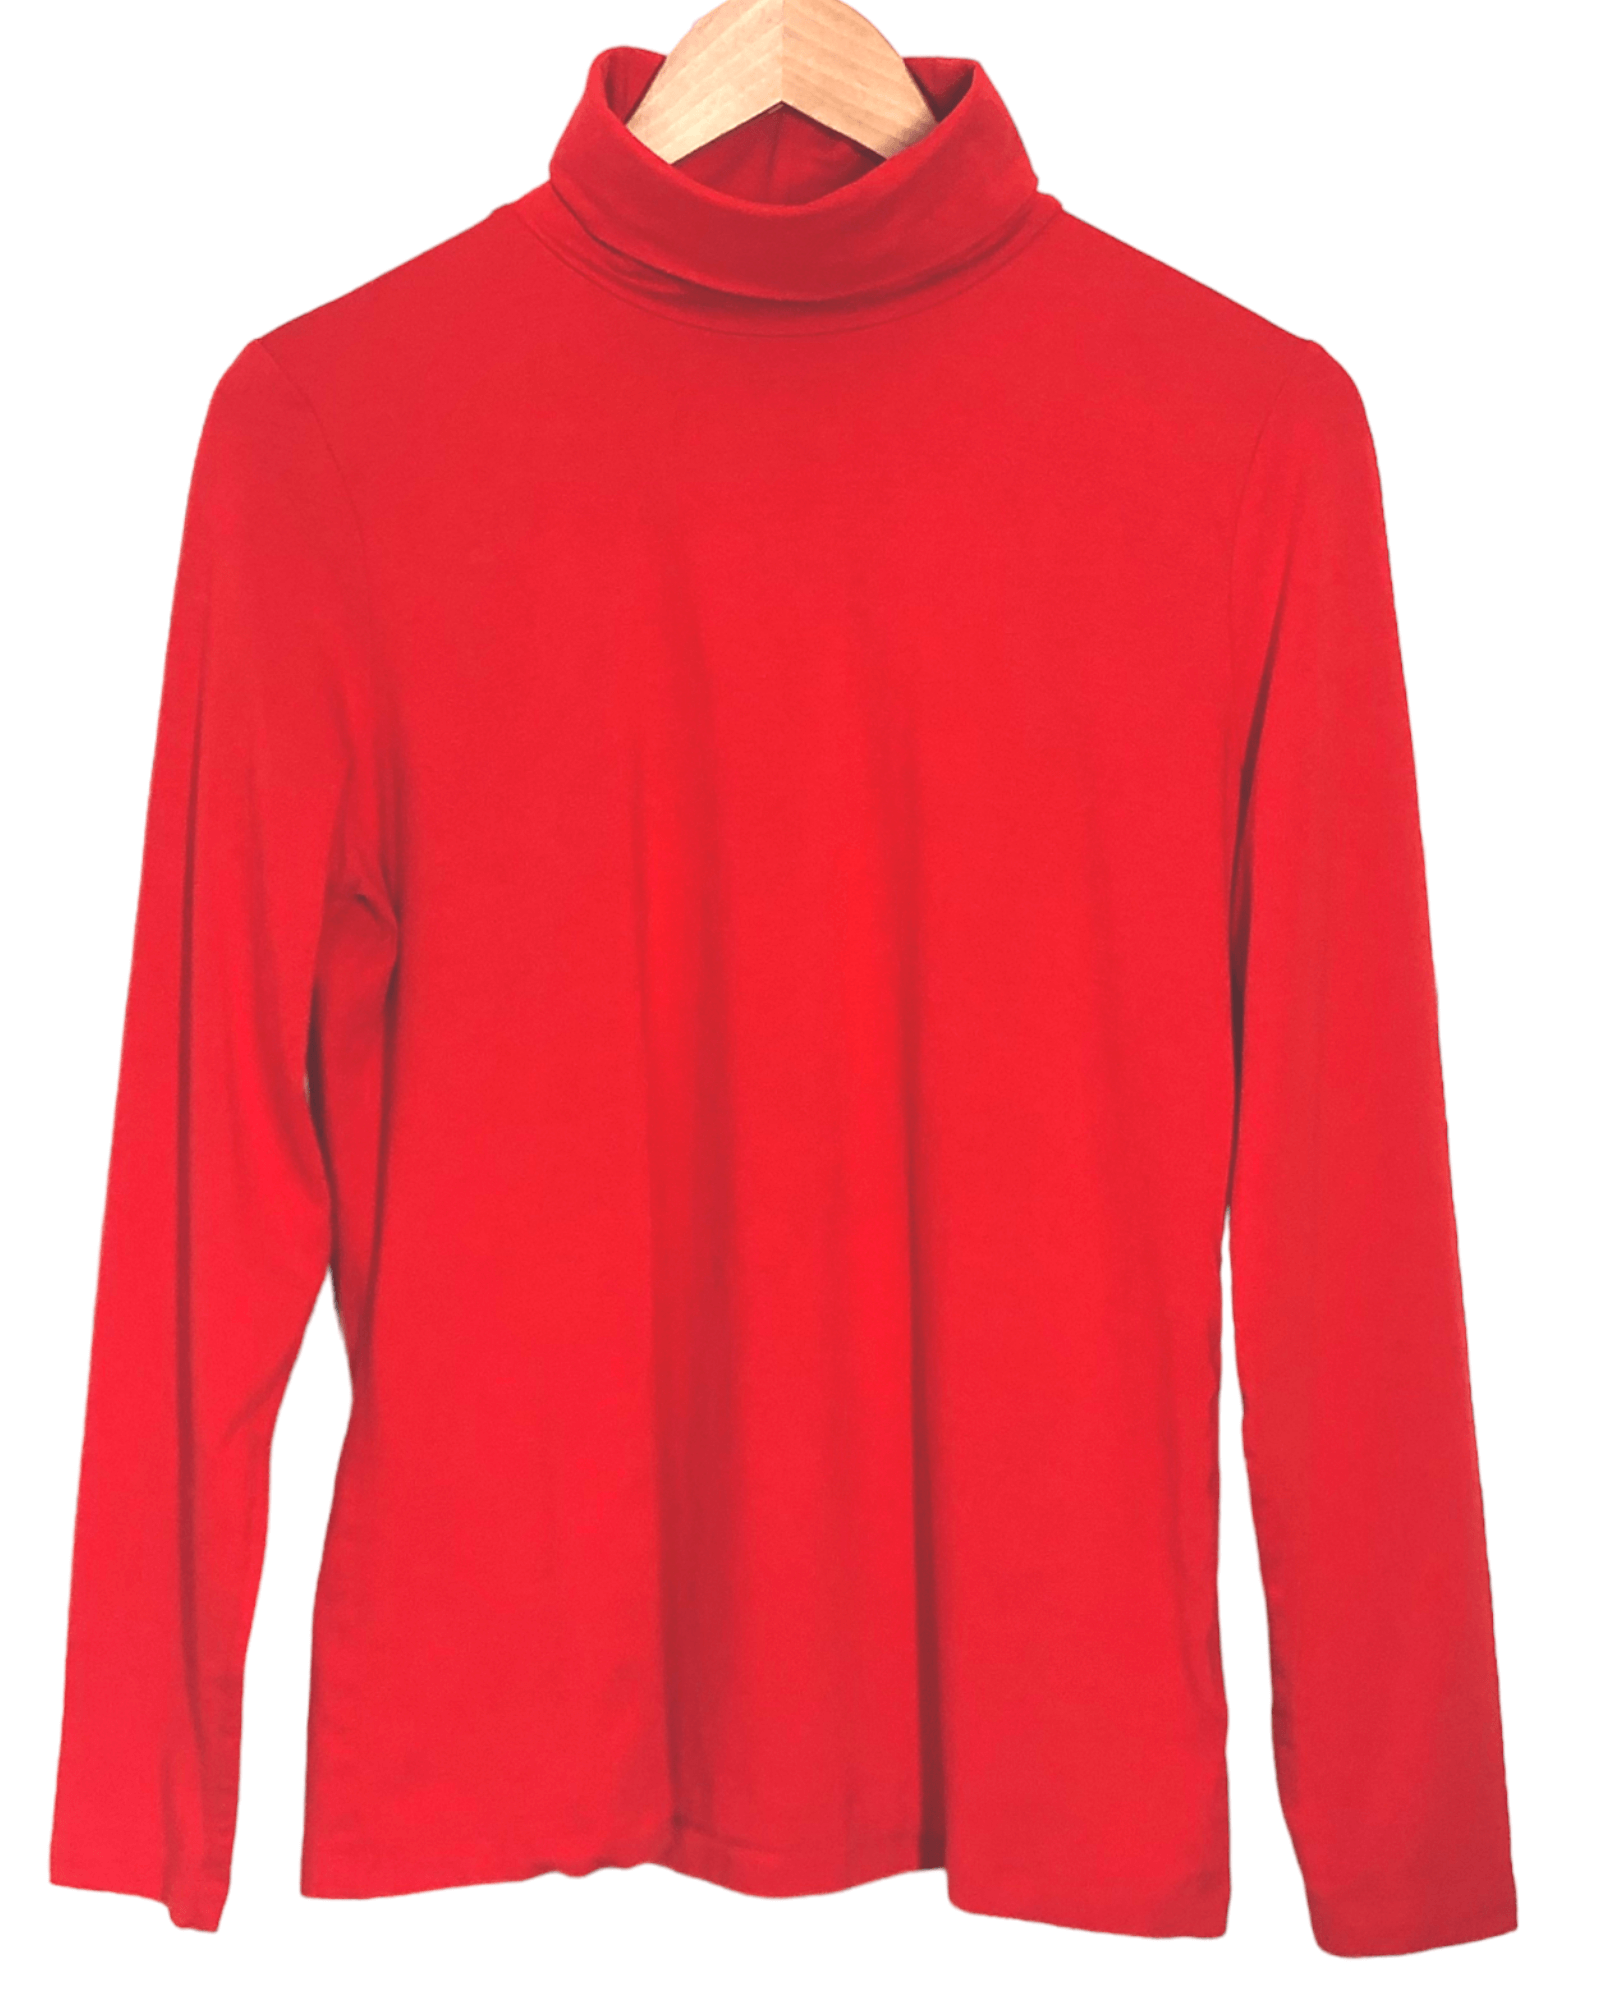 Bright Spring LANDS' END firethorn red turtleneck shirt